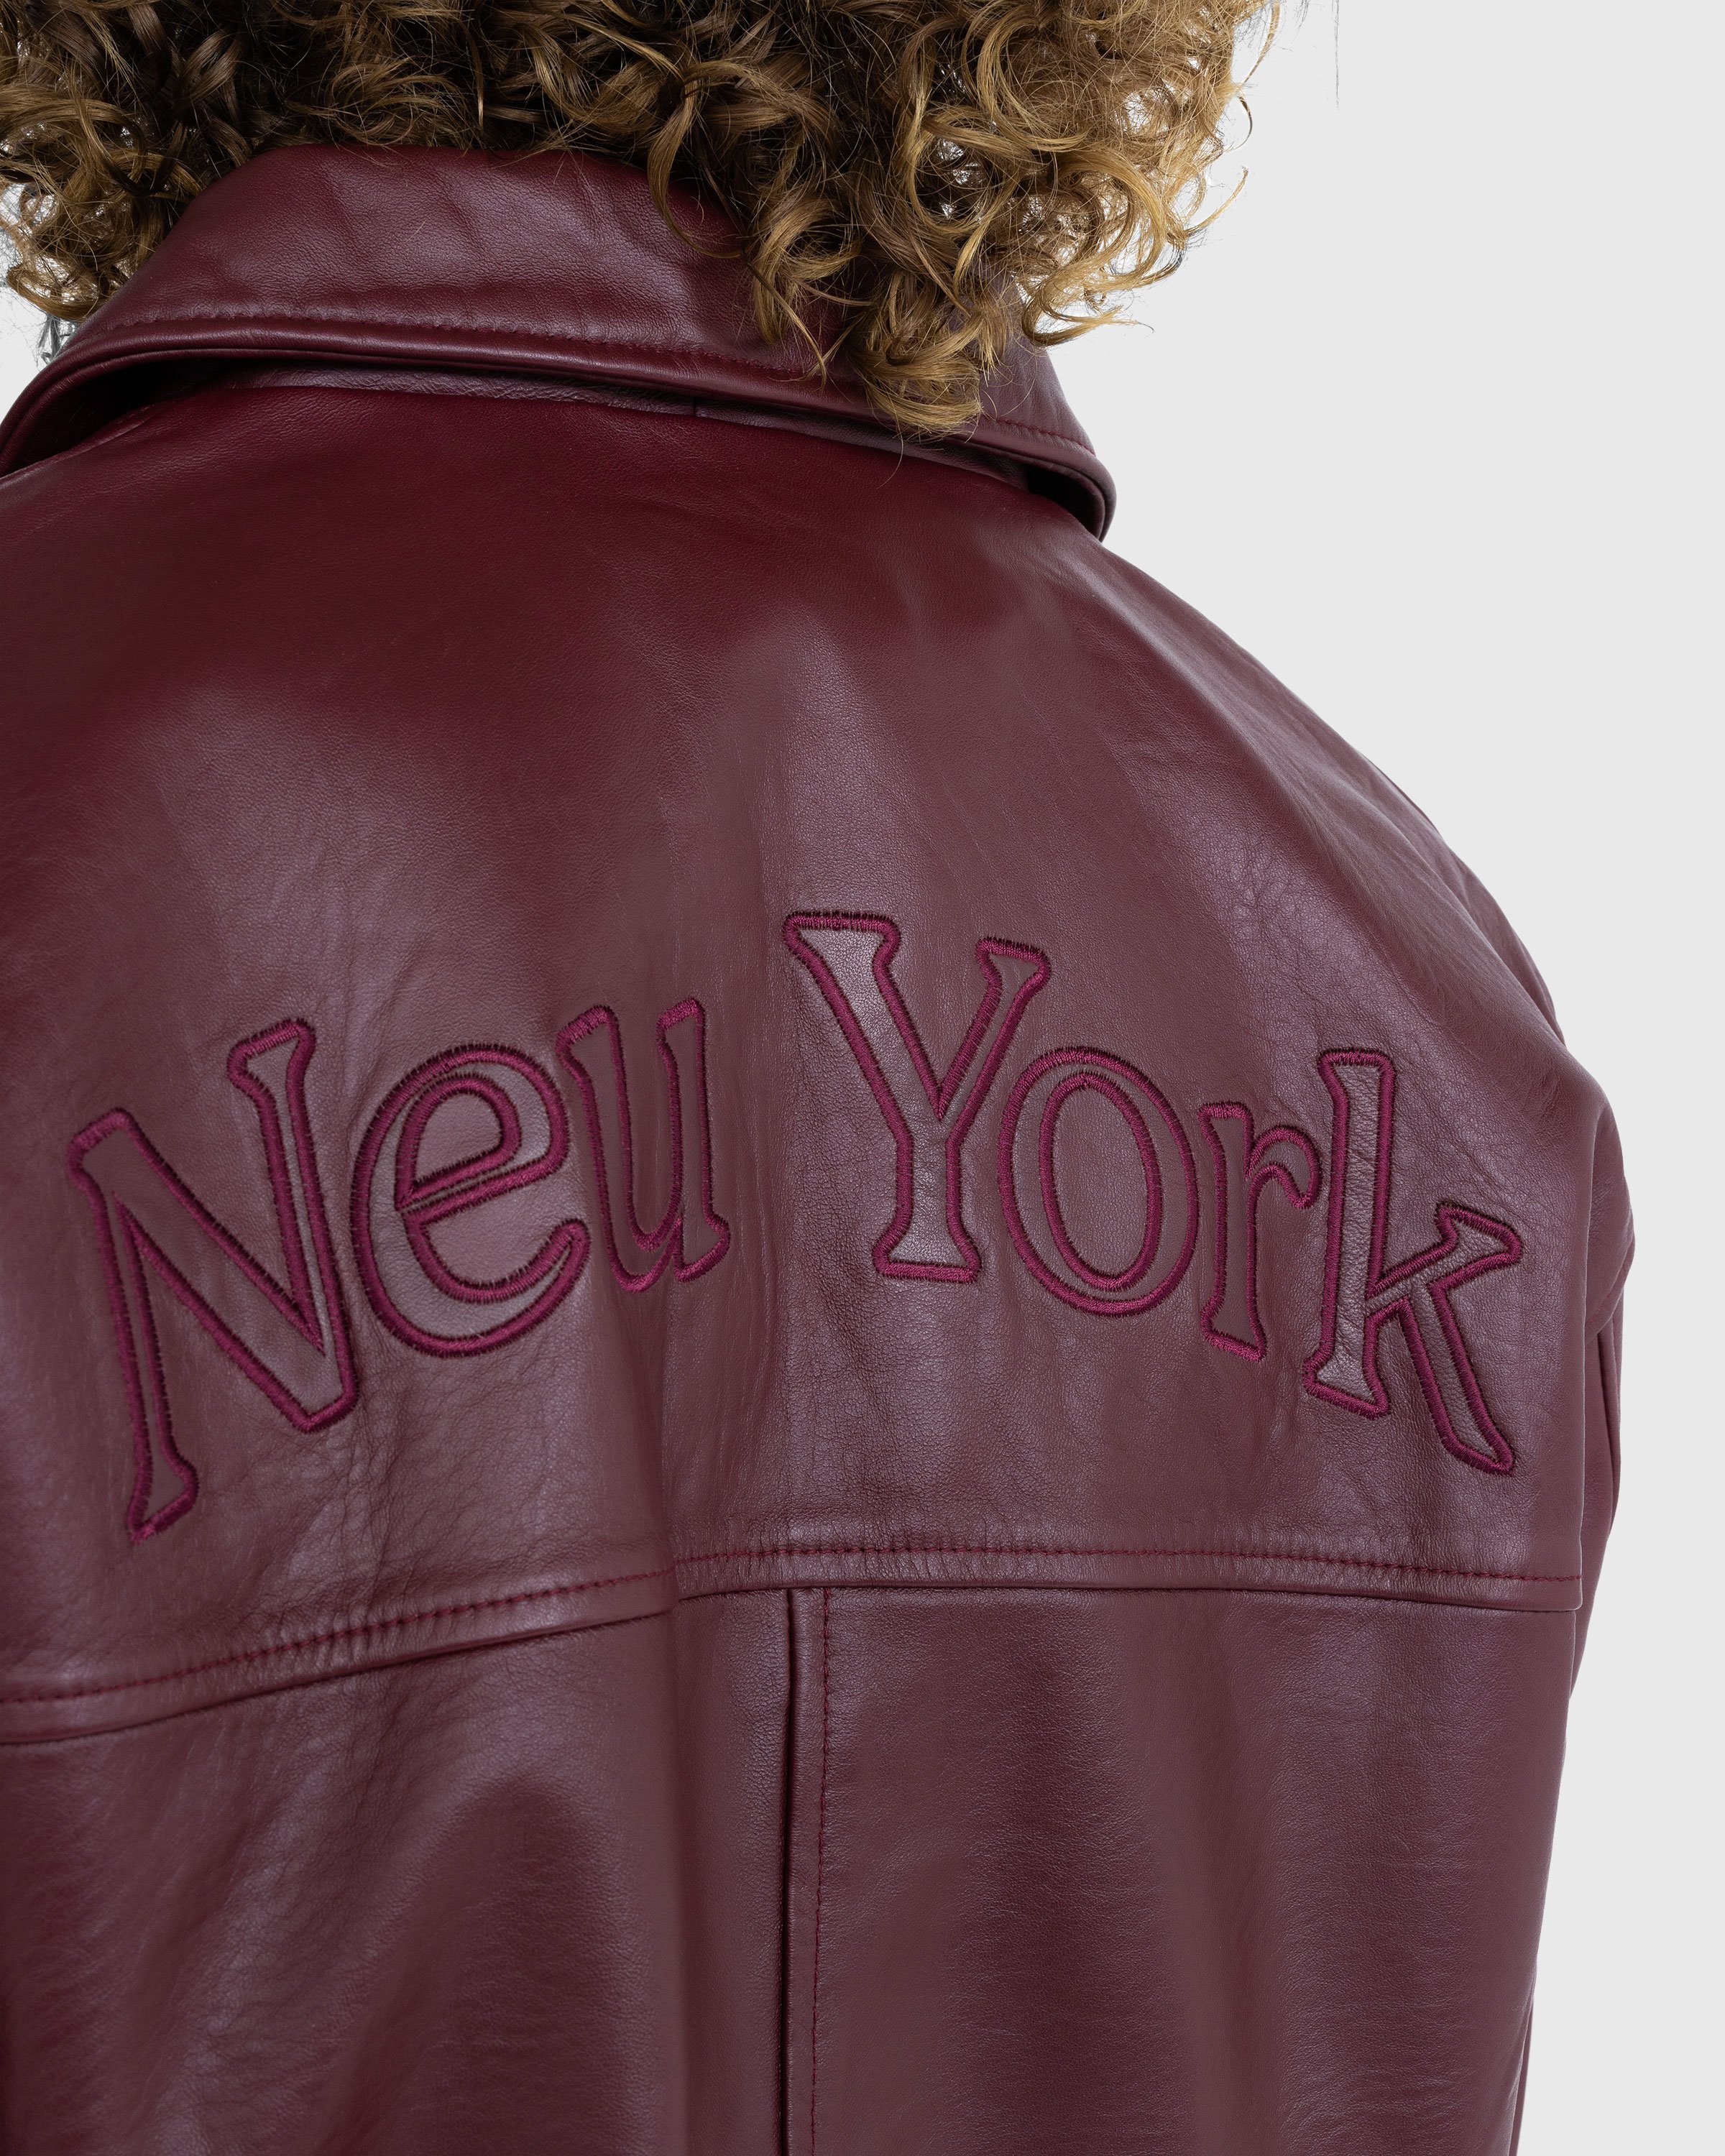 Highsnobiety - Neu York Leather Jacket Burgundy - Clothing - Red - Image 5